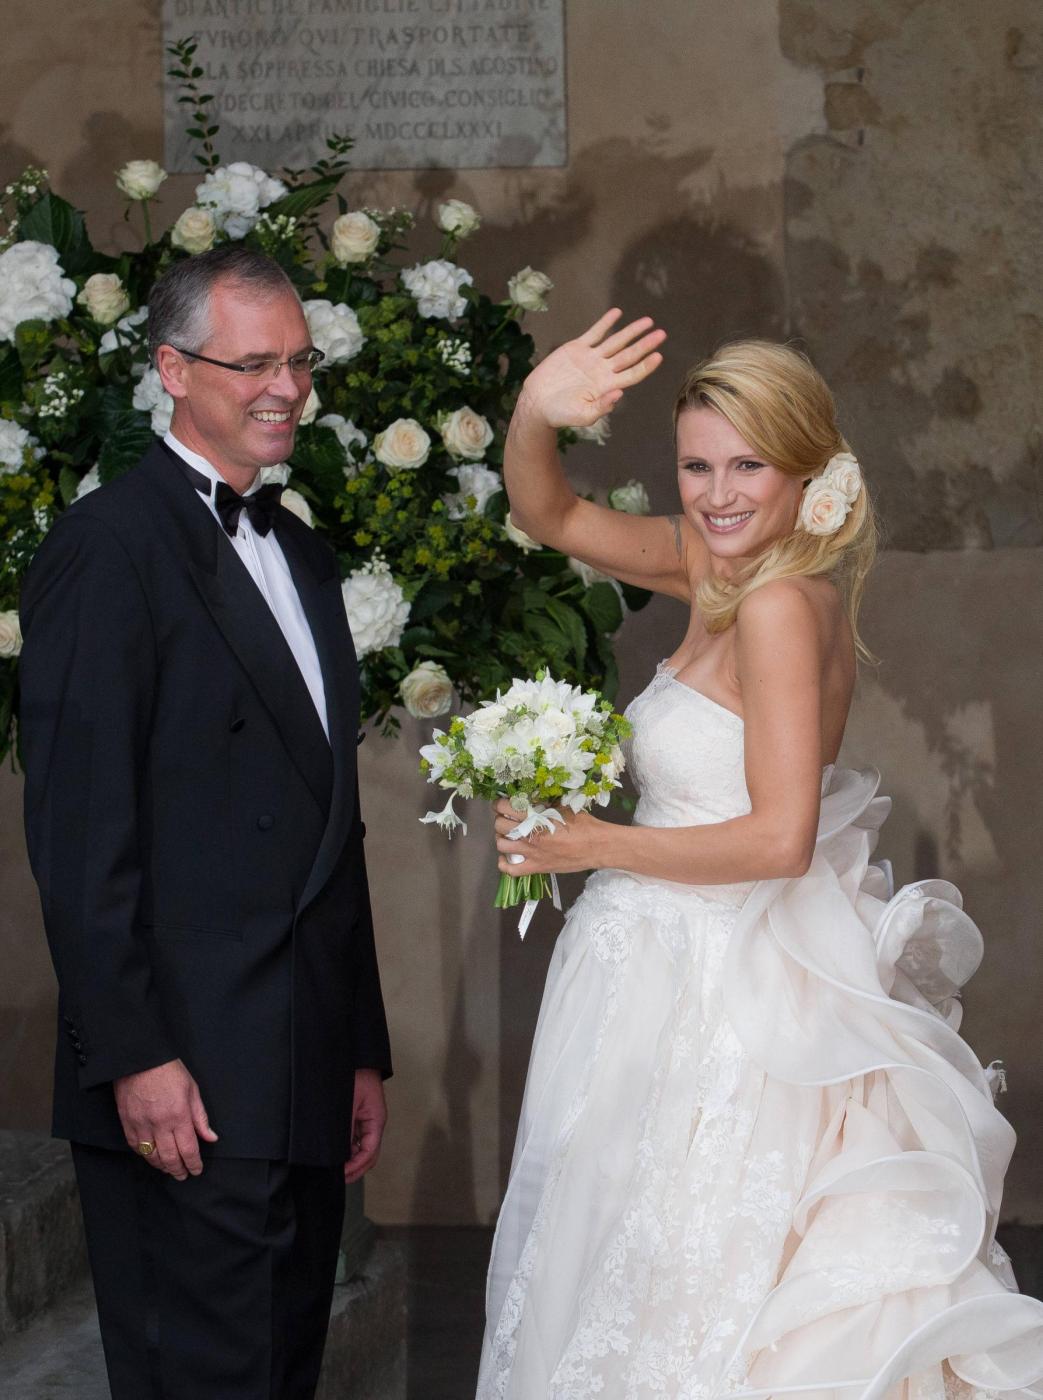 Michelle Hunziker e Tomaso Trussardi sposi. Le prime foto delle nozze